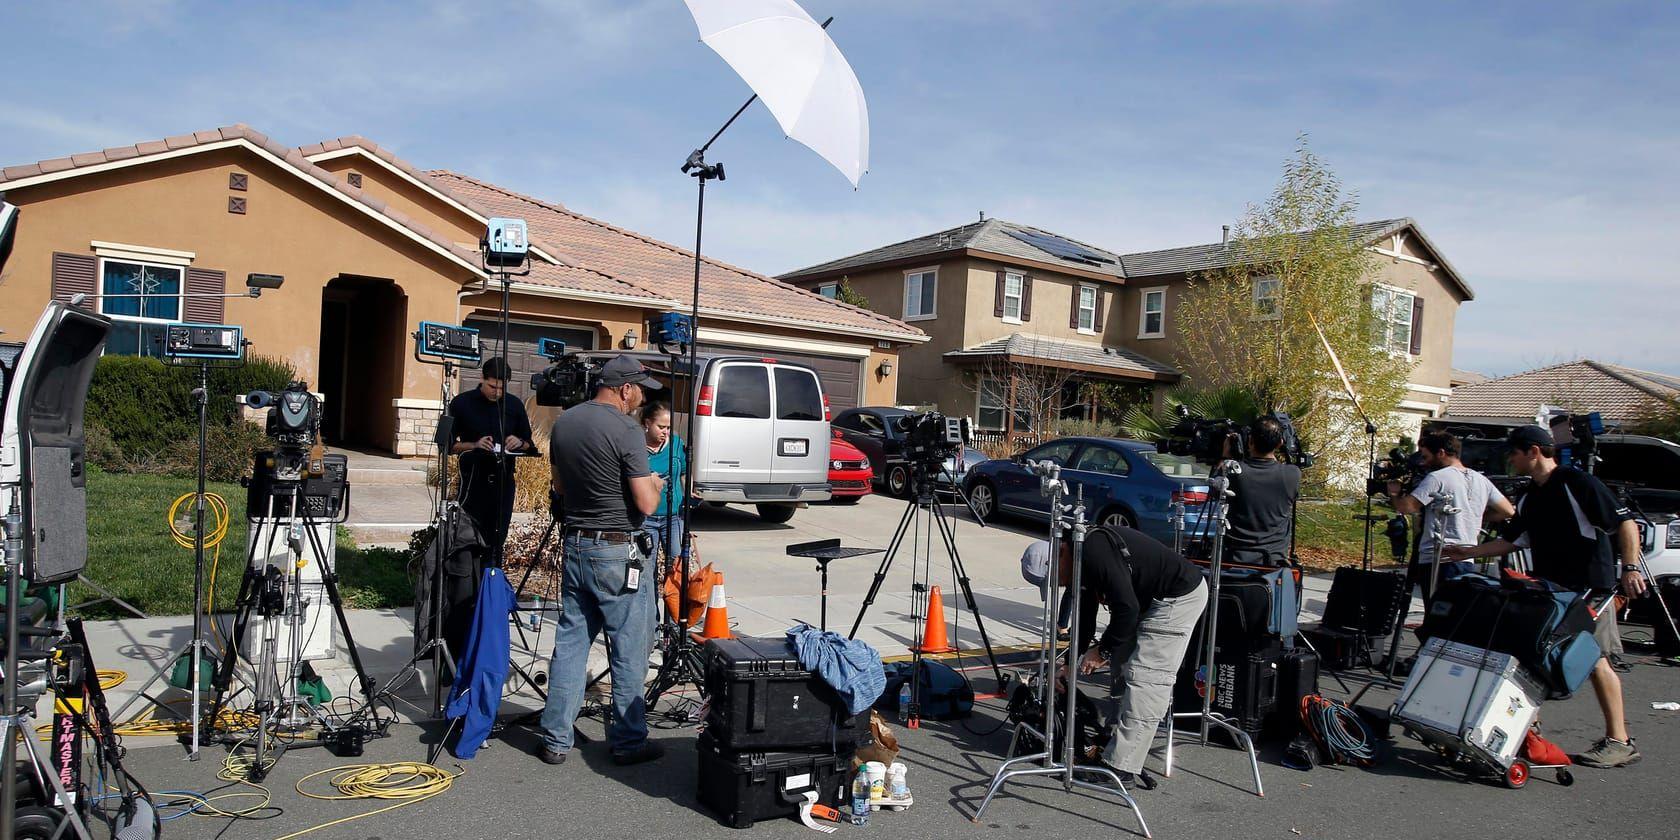 Fallet med de 13 undernärda och inspärrade barnen har väckt ett stort medieintresse i Kalifornien. Polisen har under veckan genomfört en omfattande husrannsakan i villan där familjen bott sedan 2014.